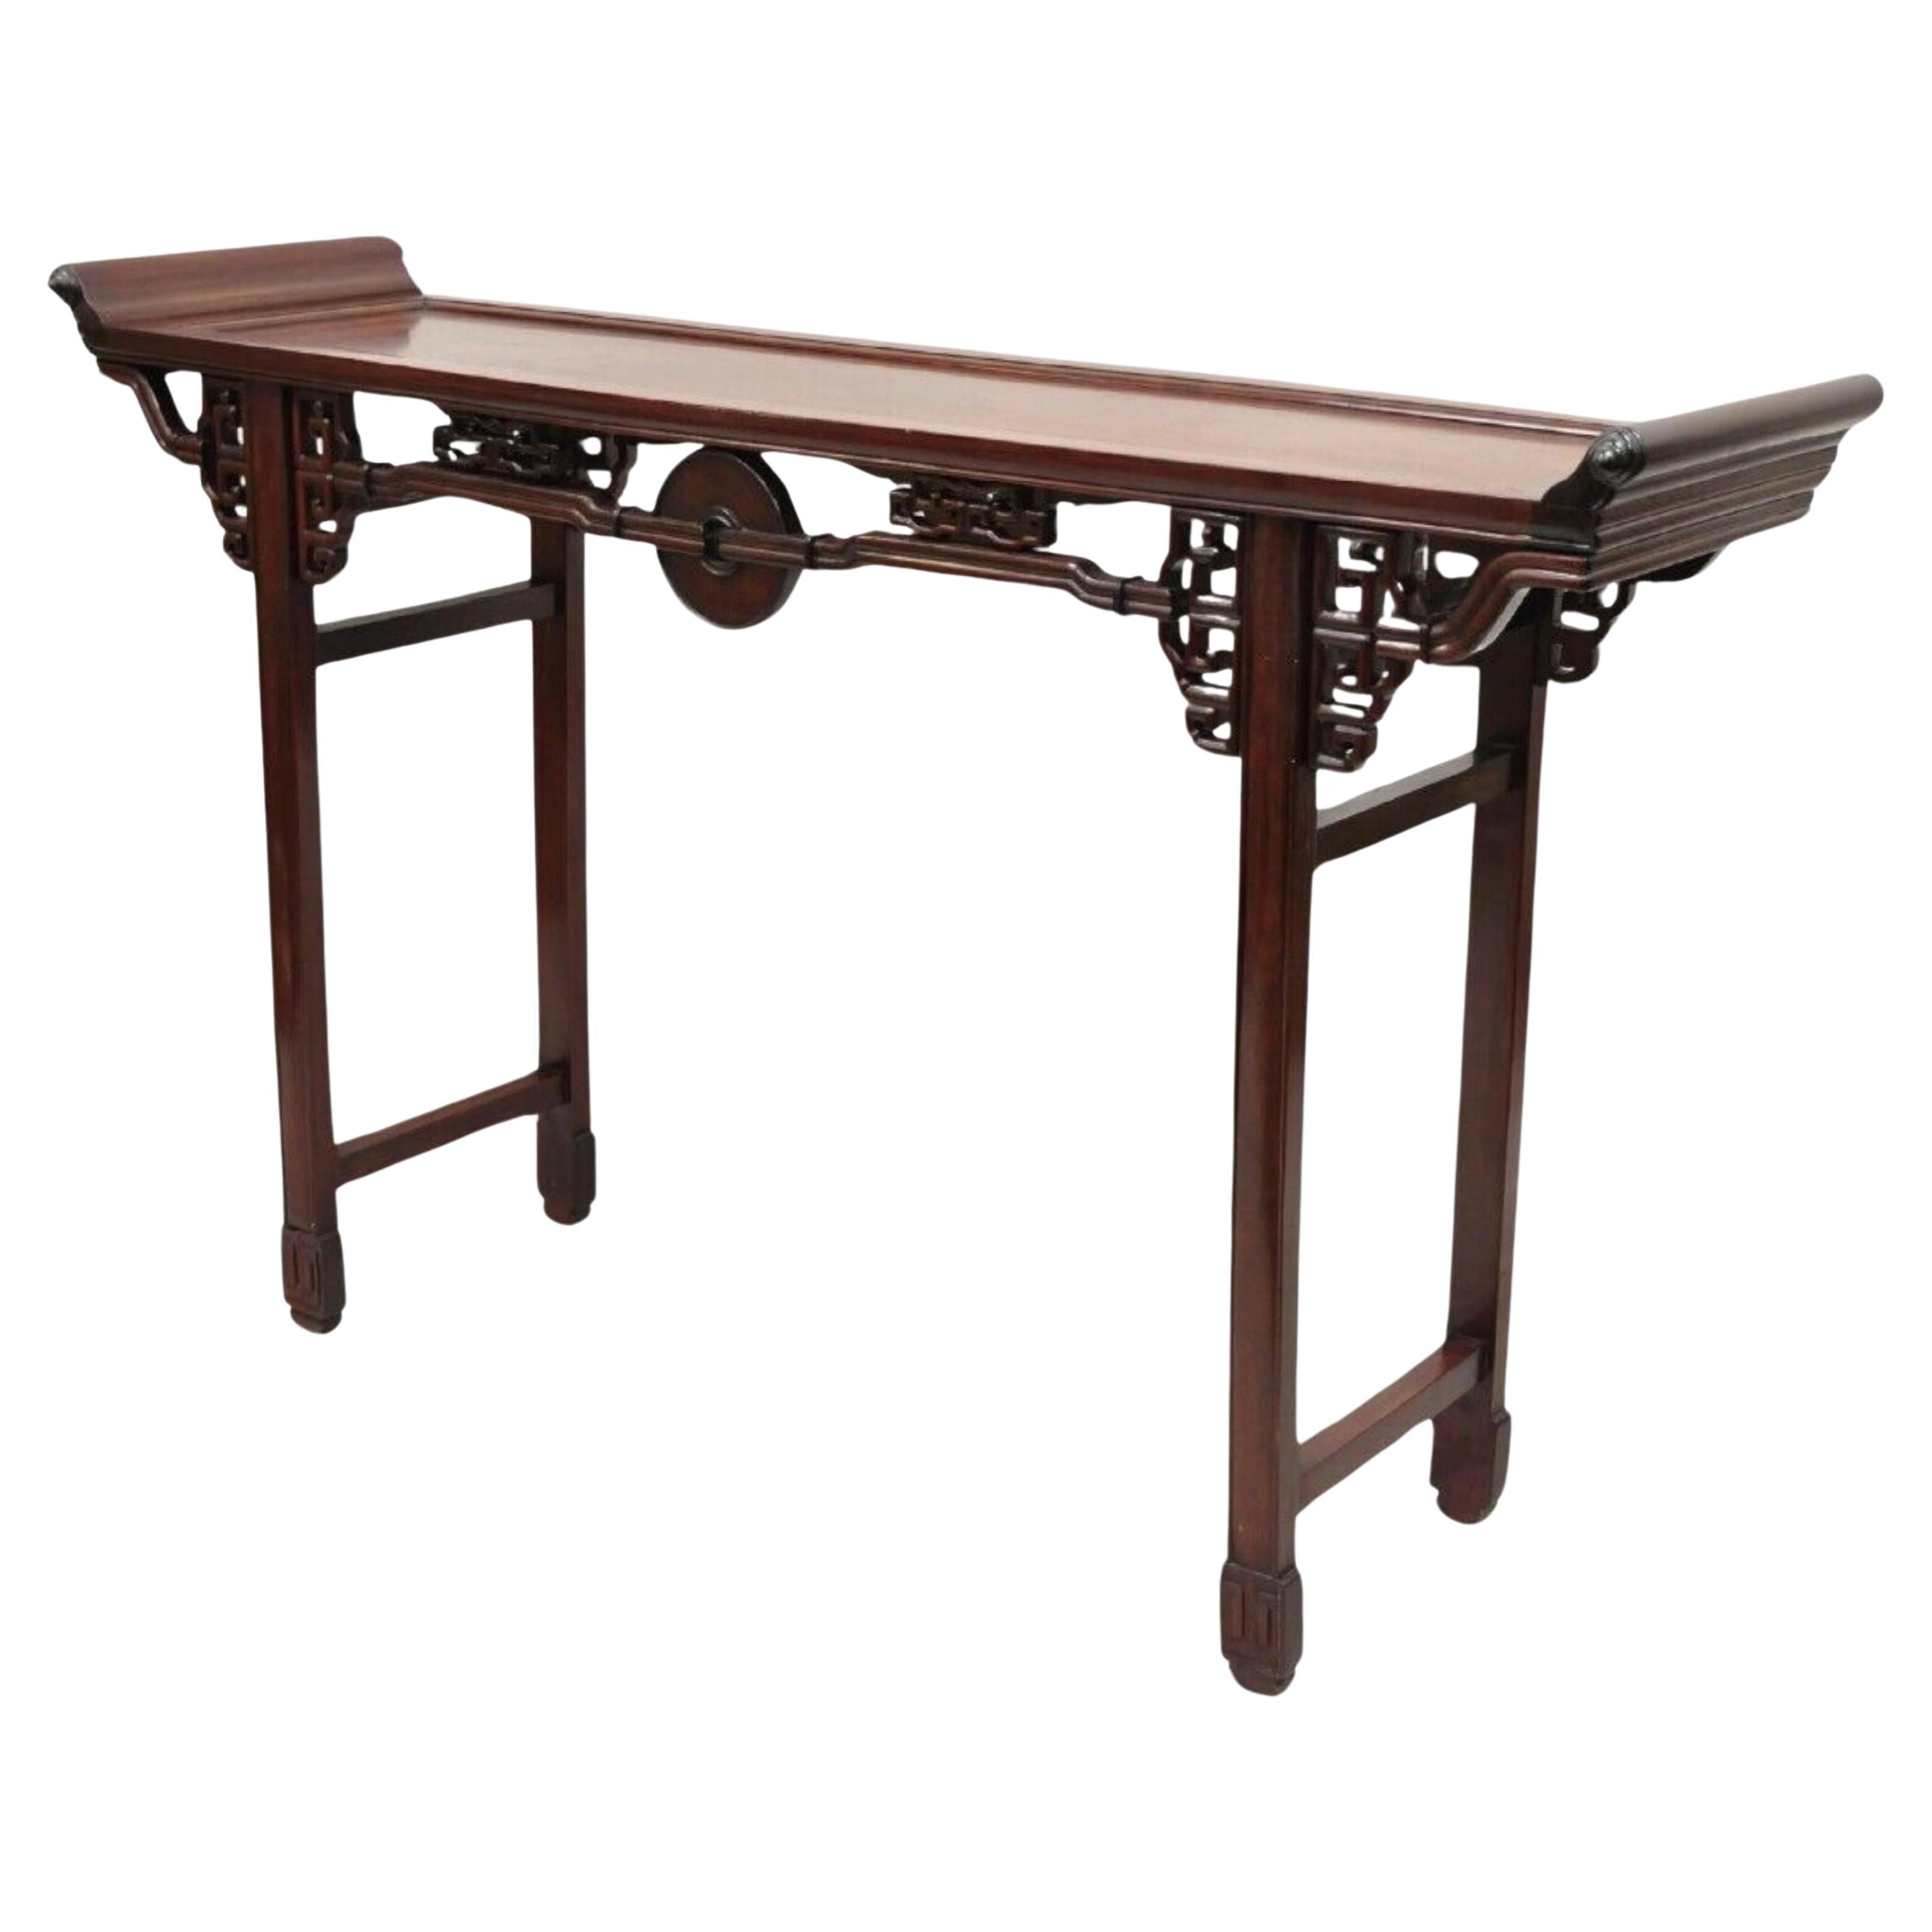 Table d'autel console en bois dur ajouré vintage chinois oriental